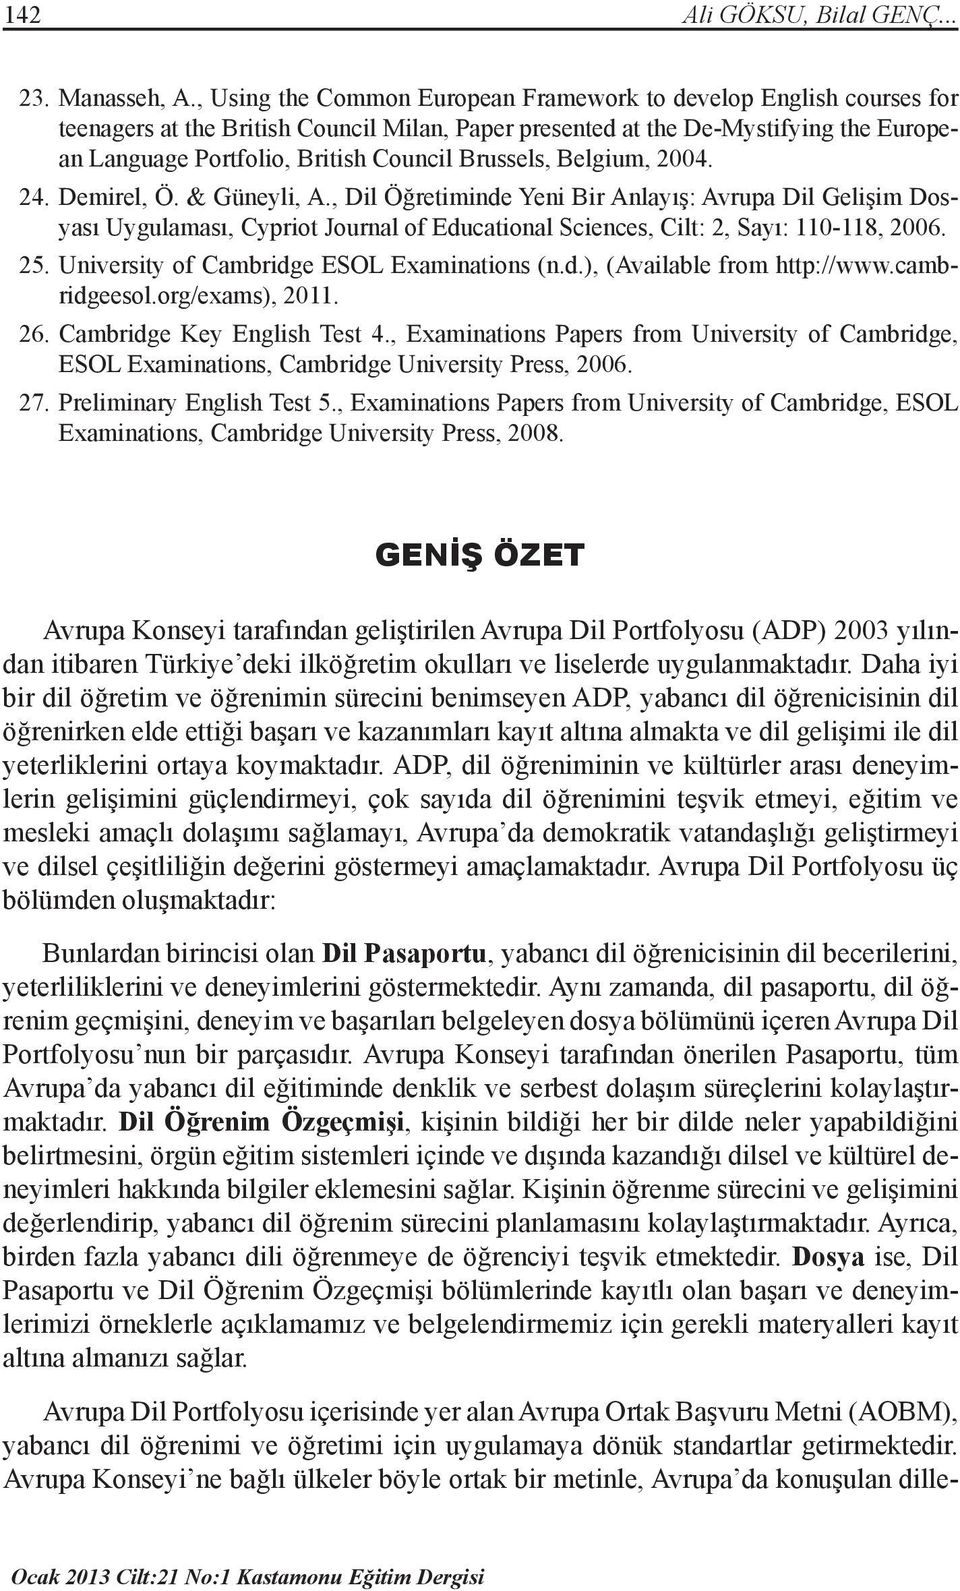 Brussels, Belgium, 2004. 24. Demirel, Ö. & Güneyli, A., Dil Öğretiminde Yeni Bir Anlayış: Avrupa Dil Gelişim Dosyası Uygulaması, Cypriot Journal of Educational Sciences, Cilt: 2, Sayı: 110-118, 2006.